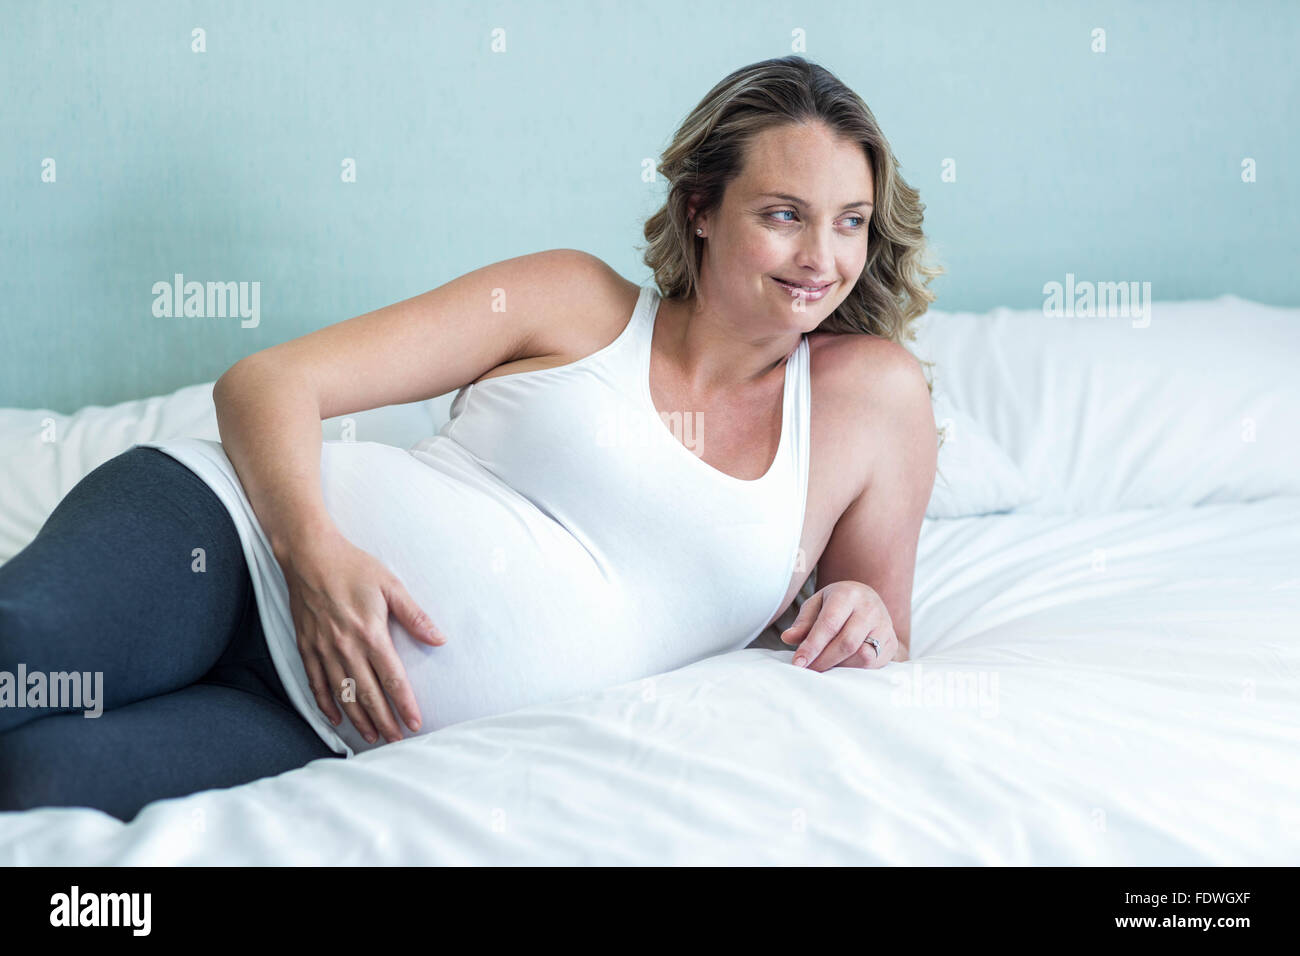 Schwangere Frau ihren Bauch berühren. Stockfoto